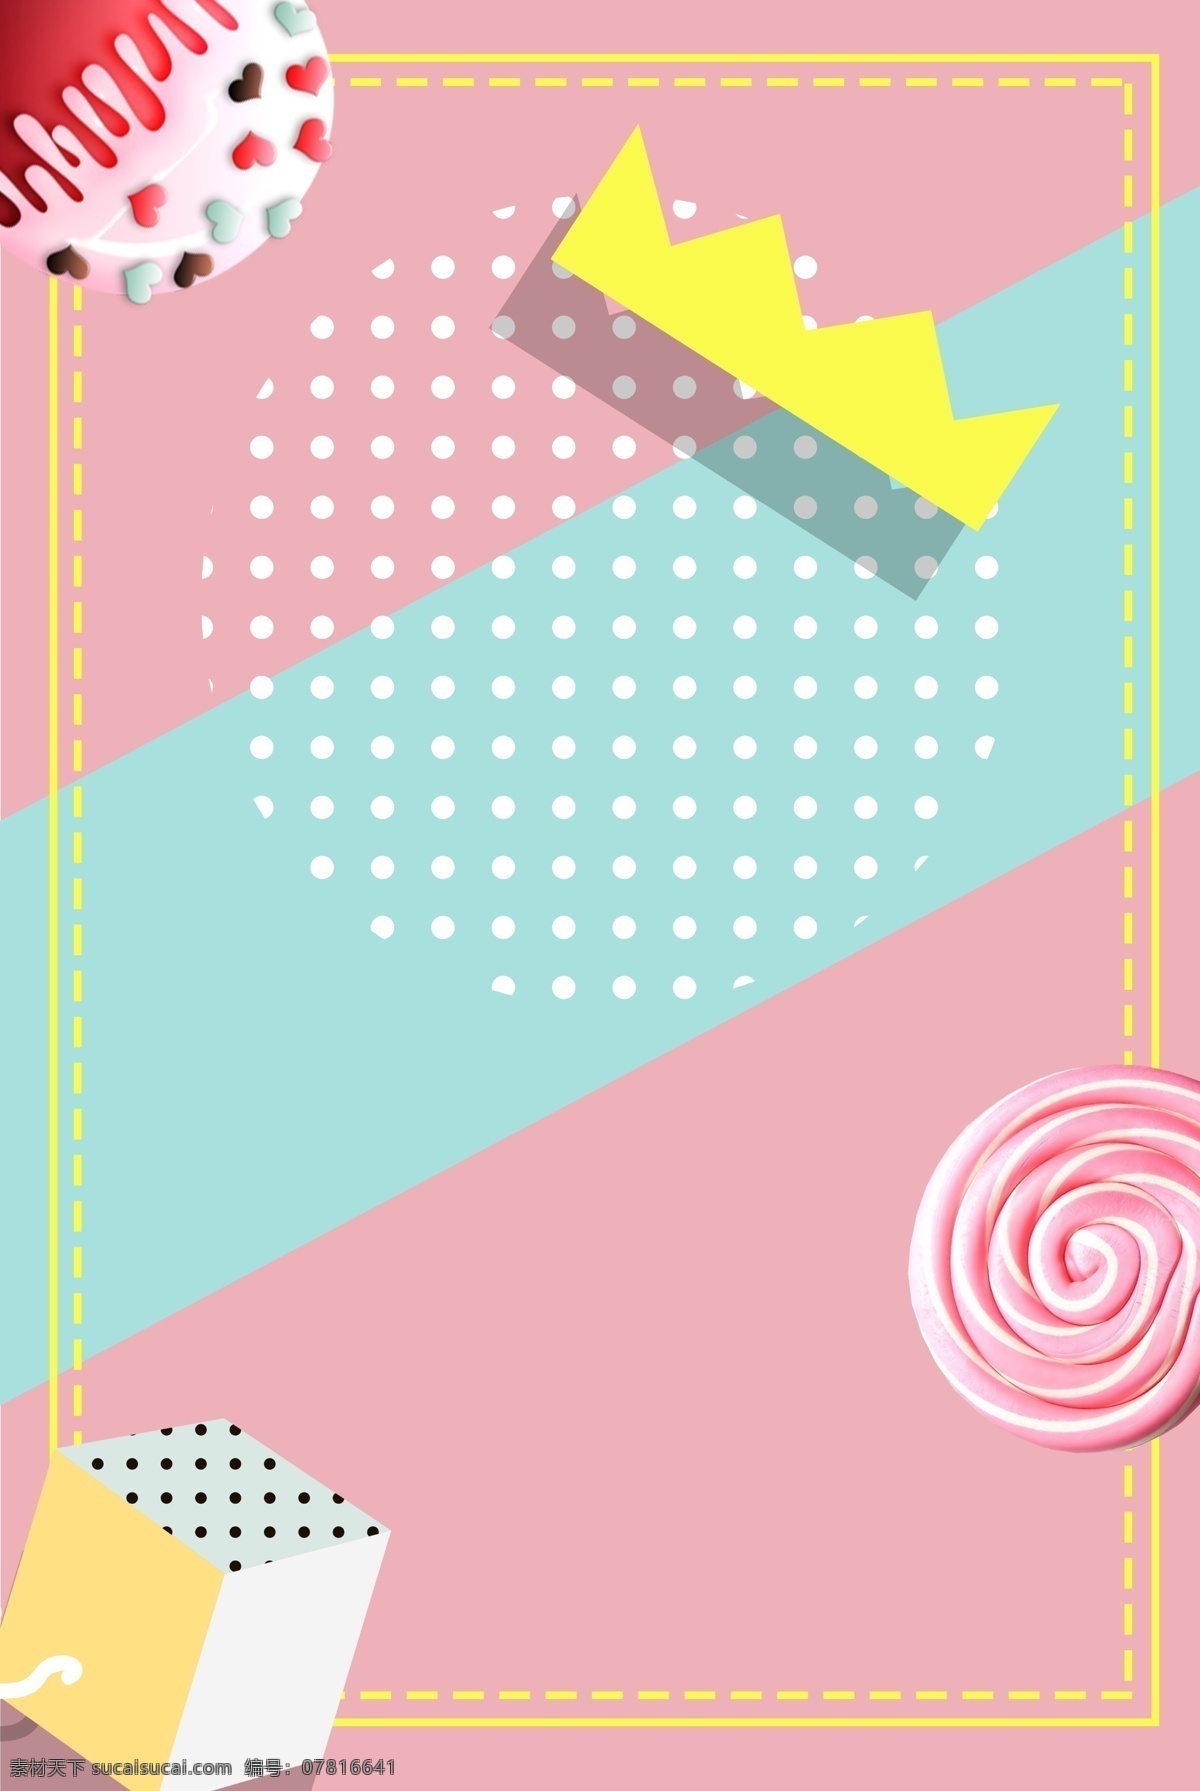 糖果 棒棒糖 皇冠 海报 背景 边框 简约 唯美 美食背景 糖果背景 糖果海报背景 彩色糖果 糖果背景图 棉花糖背景 粉色 少女心